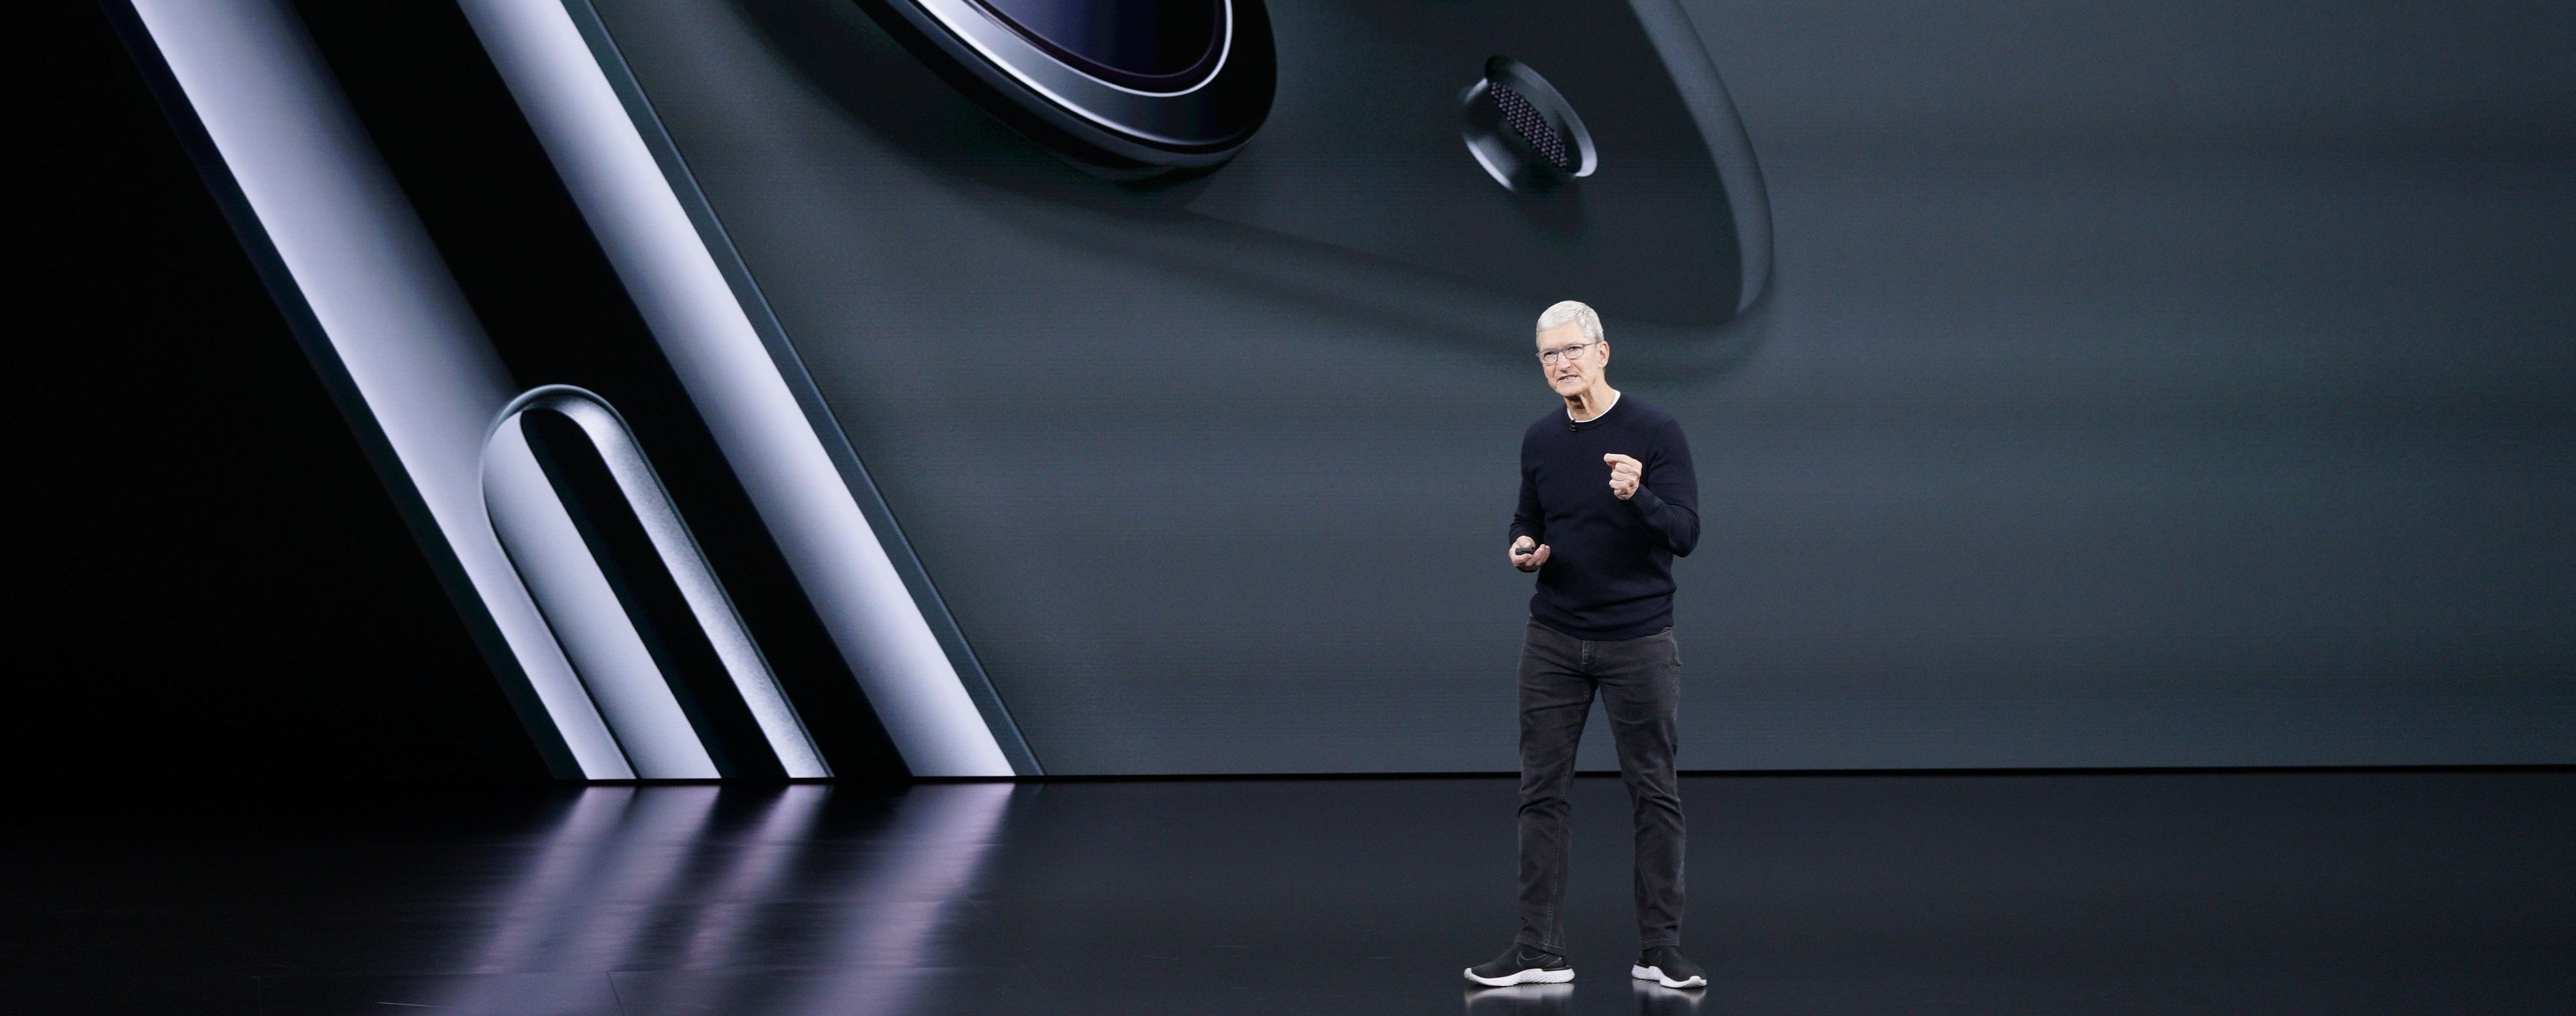 Apple презентовала новые модели iPhone и другие гаджеты. Текстовая хроника события